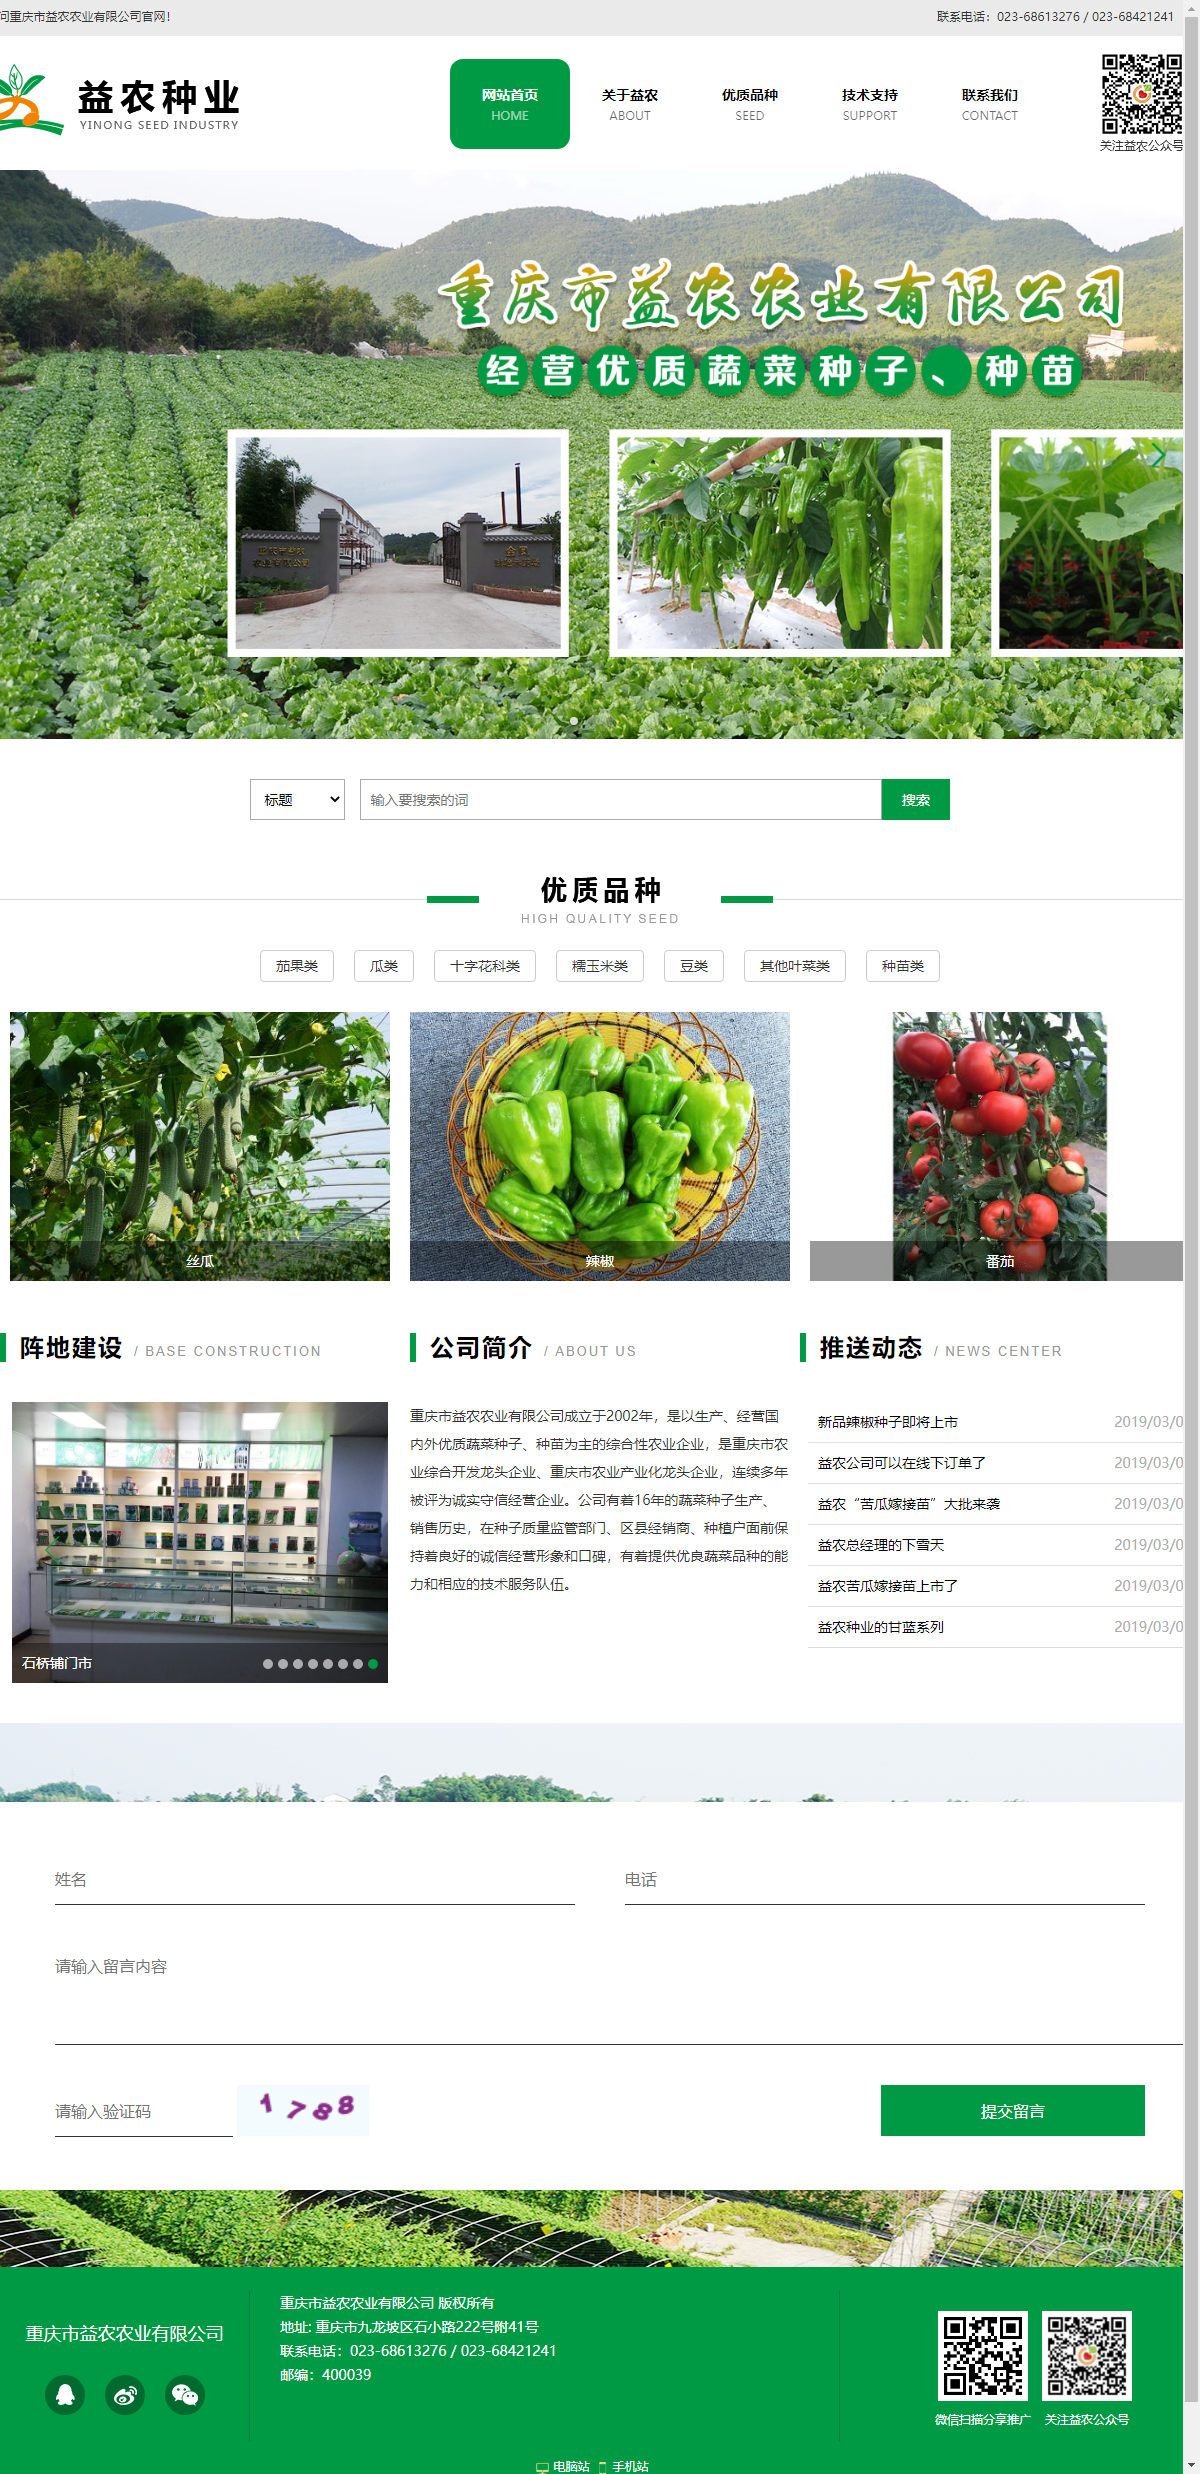 重庆市益农农业有限公司网站案例